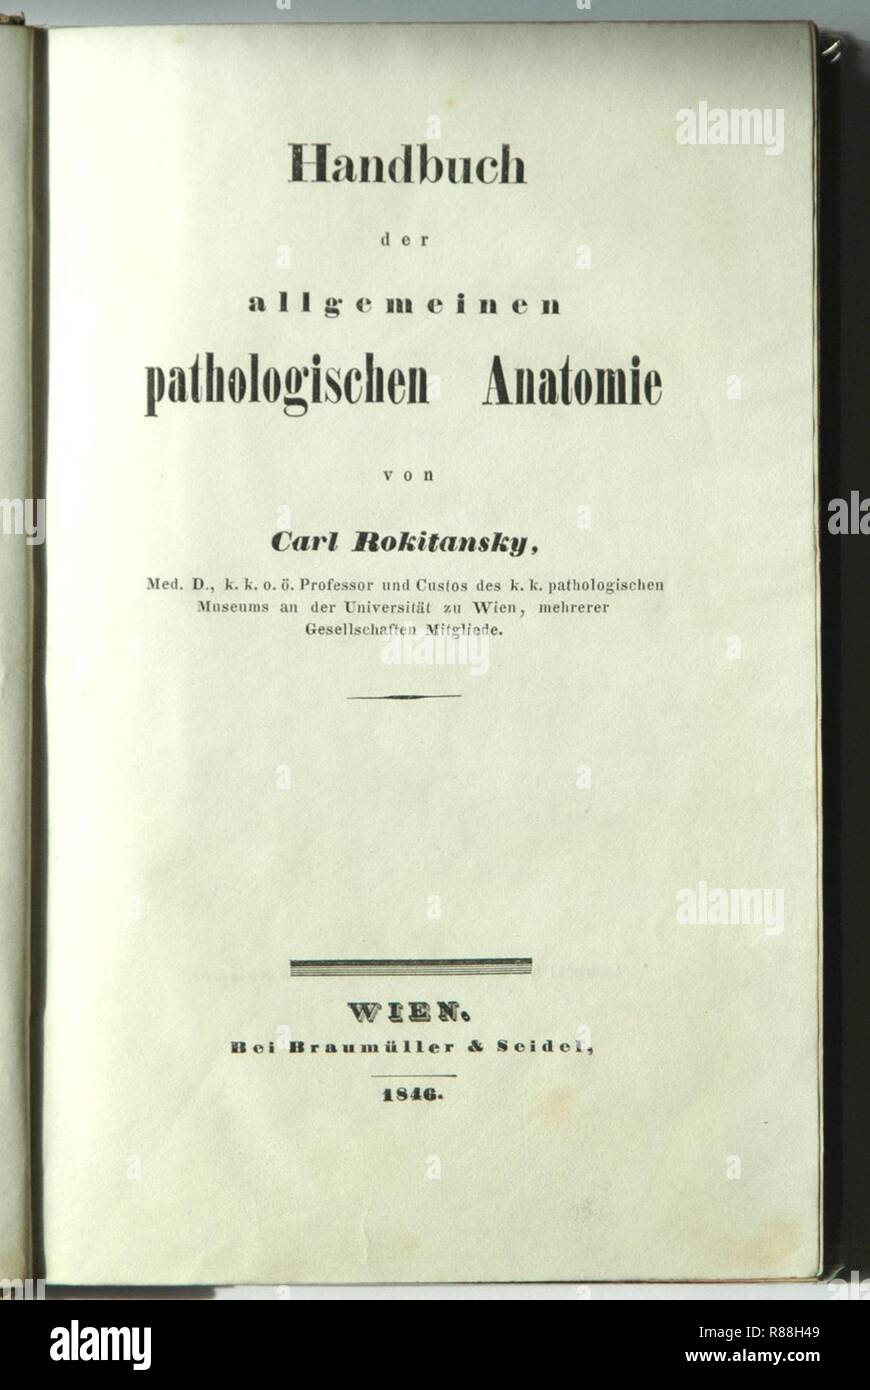 Carl Rokitansky Handbuch der allgemeinen pathologischen Anatomie. Stock Photo